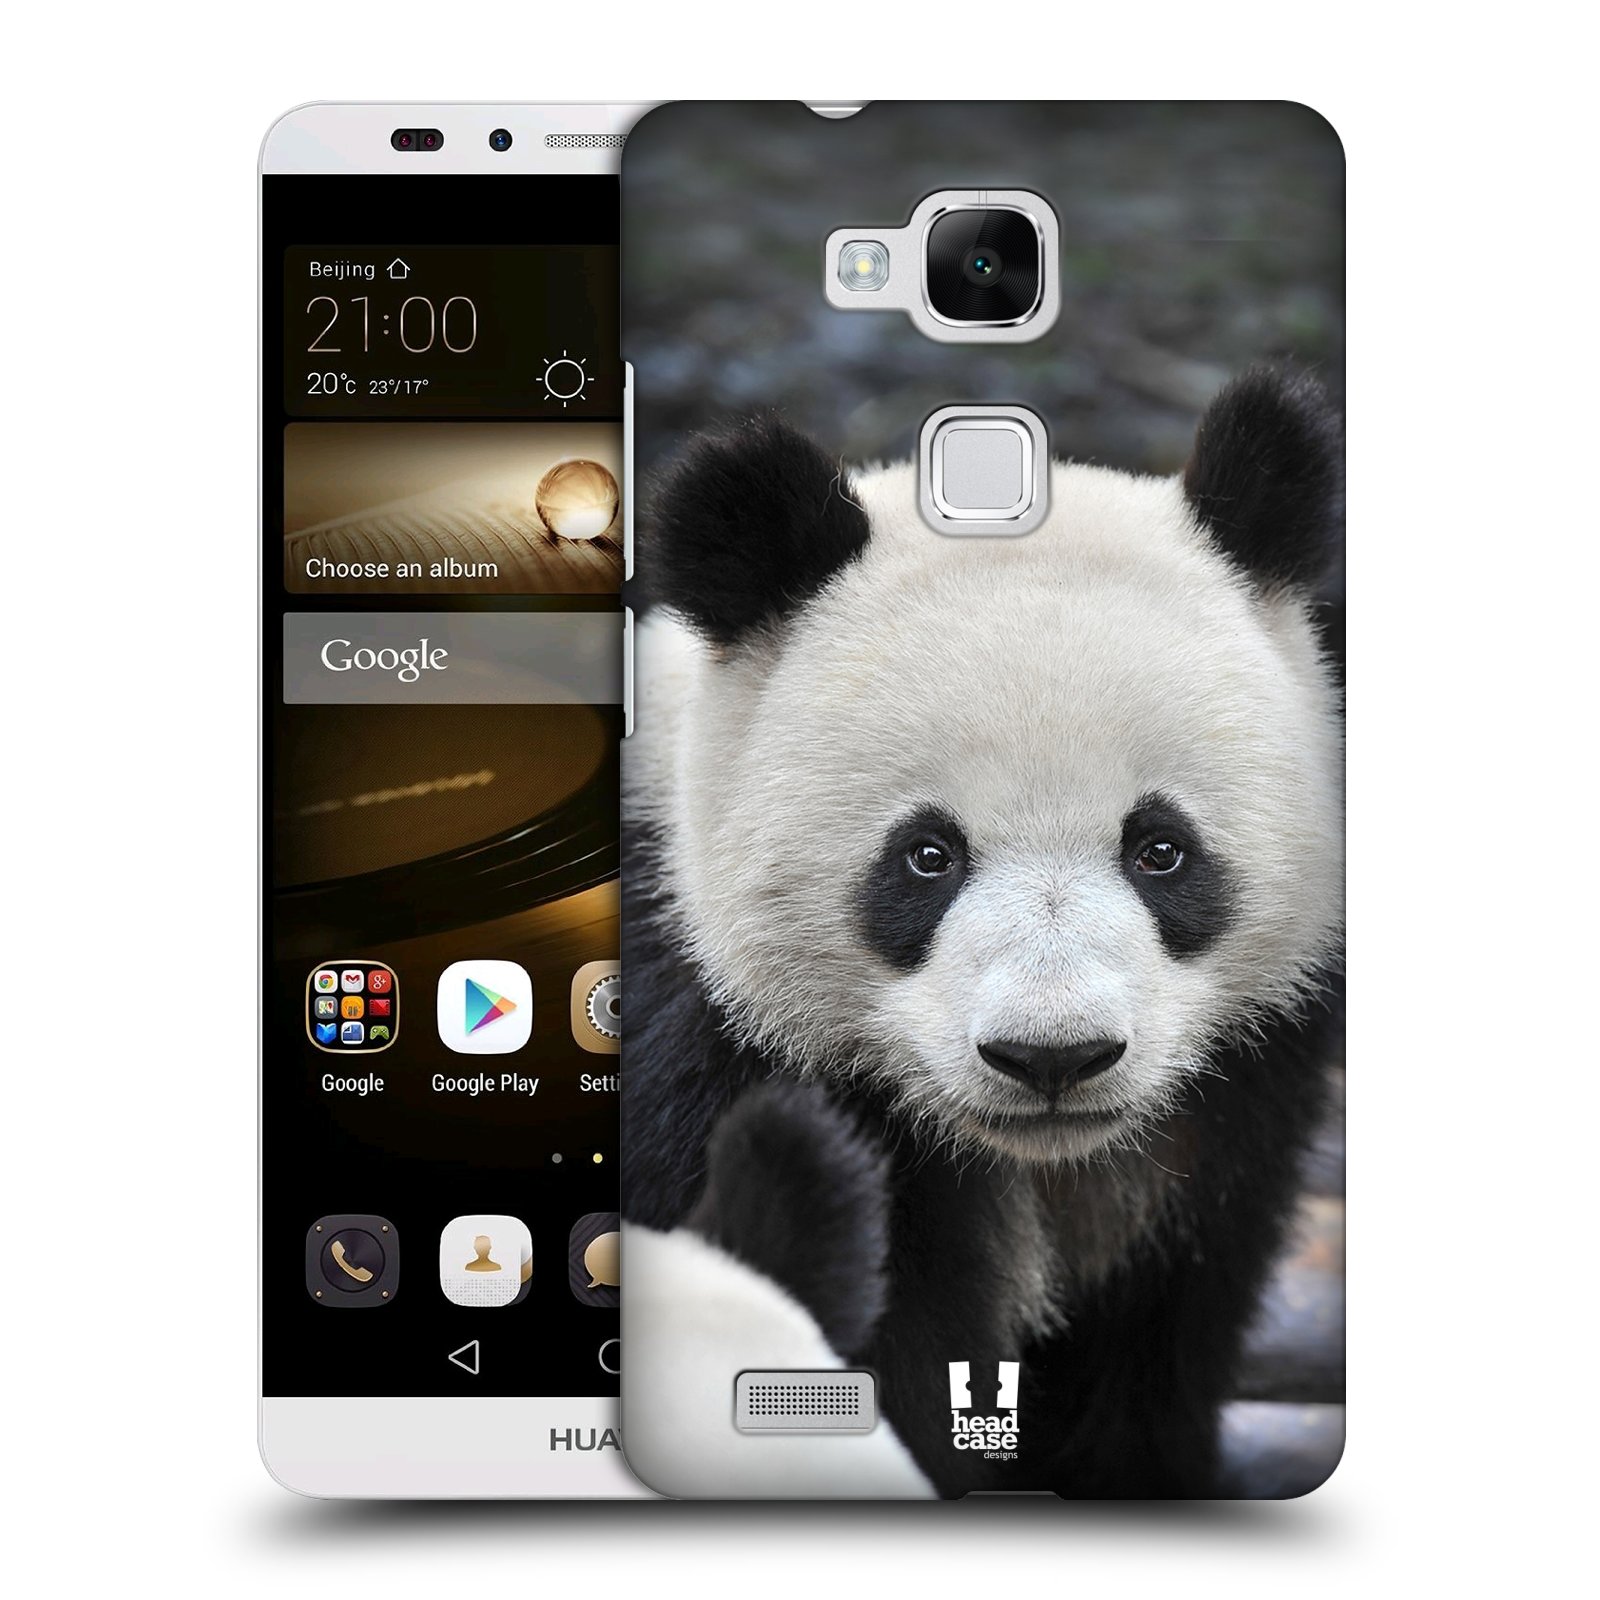 HEAD CASE plastový obal na mobil Huawei Mate 7 vzor Divočina, Divoký život a zvířata foto MEDVĚD PANDA